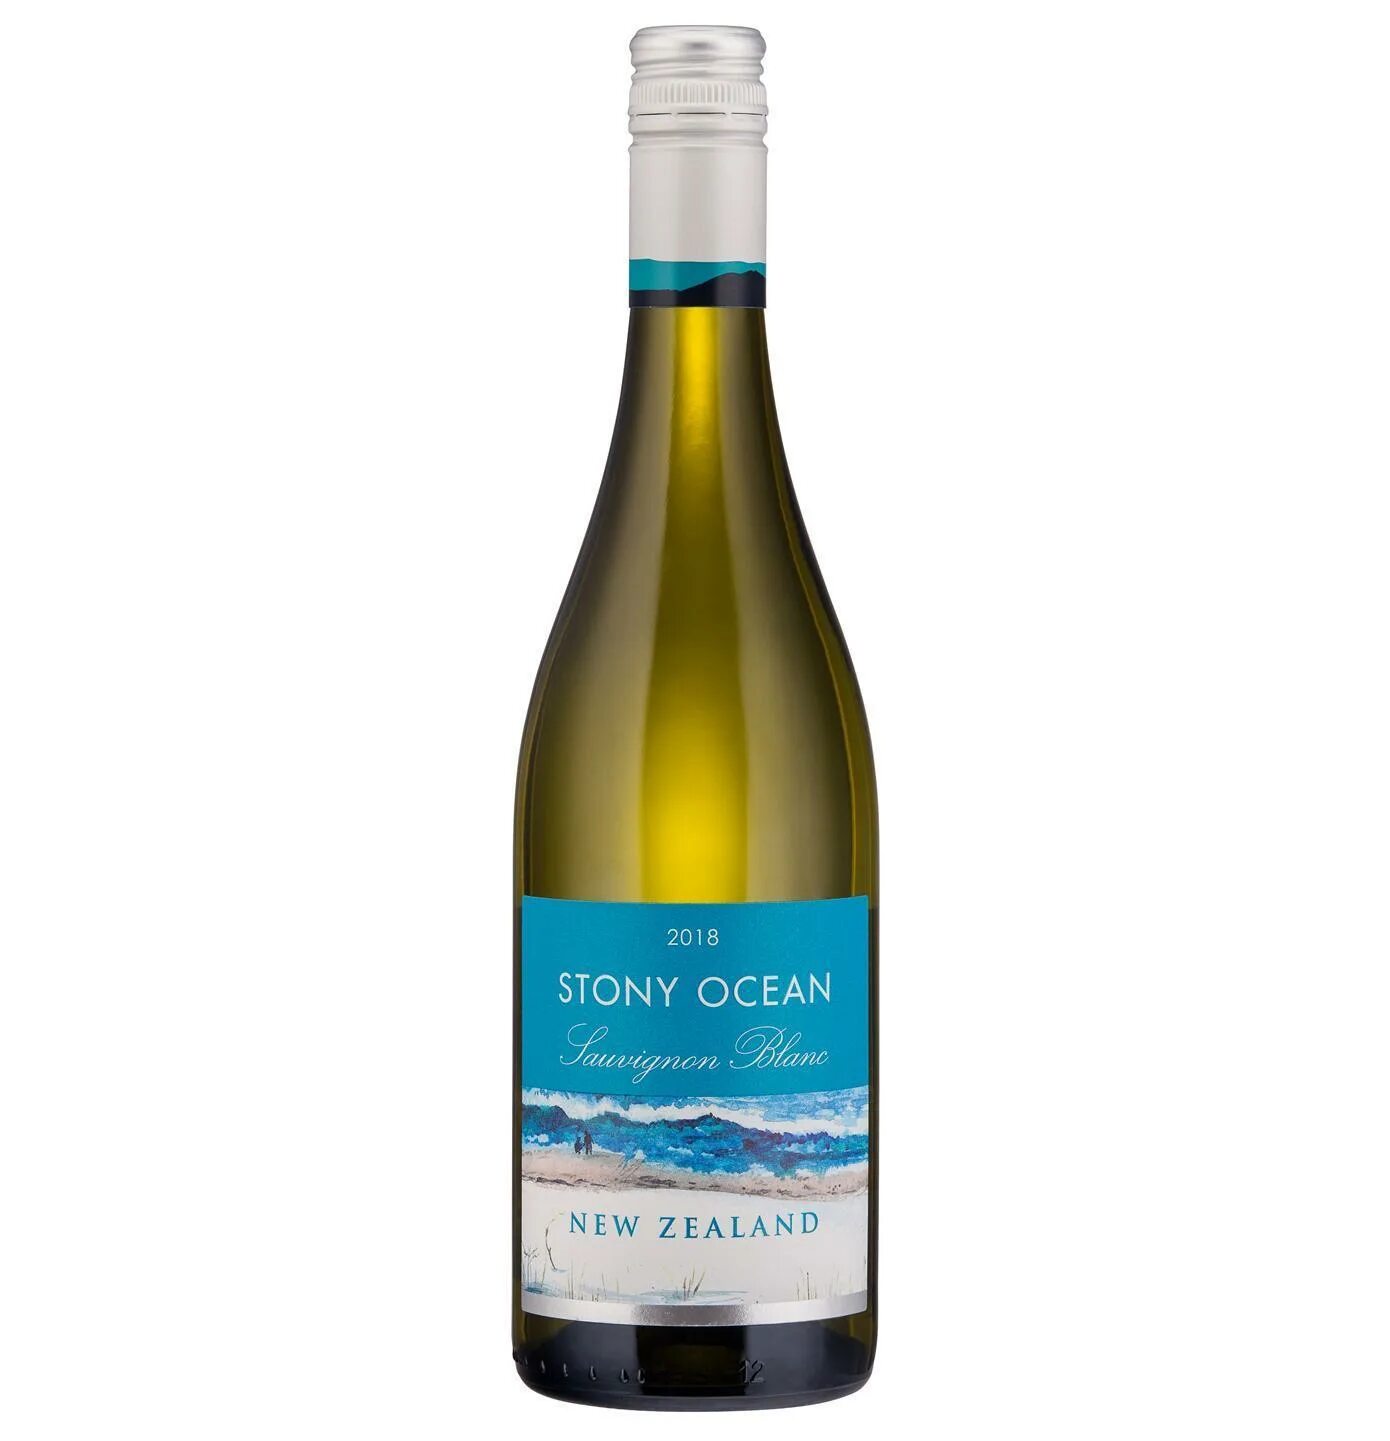 Стони оушен Совиньон Блан. Вино белое новая Зеландия Совиньон Блан. Sauvignon Blanc вино новая Зеландия. Stone Ocean Sauvignon Blanc.